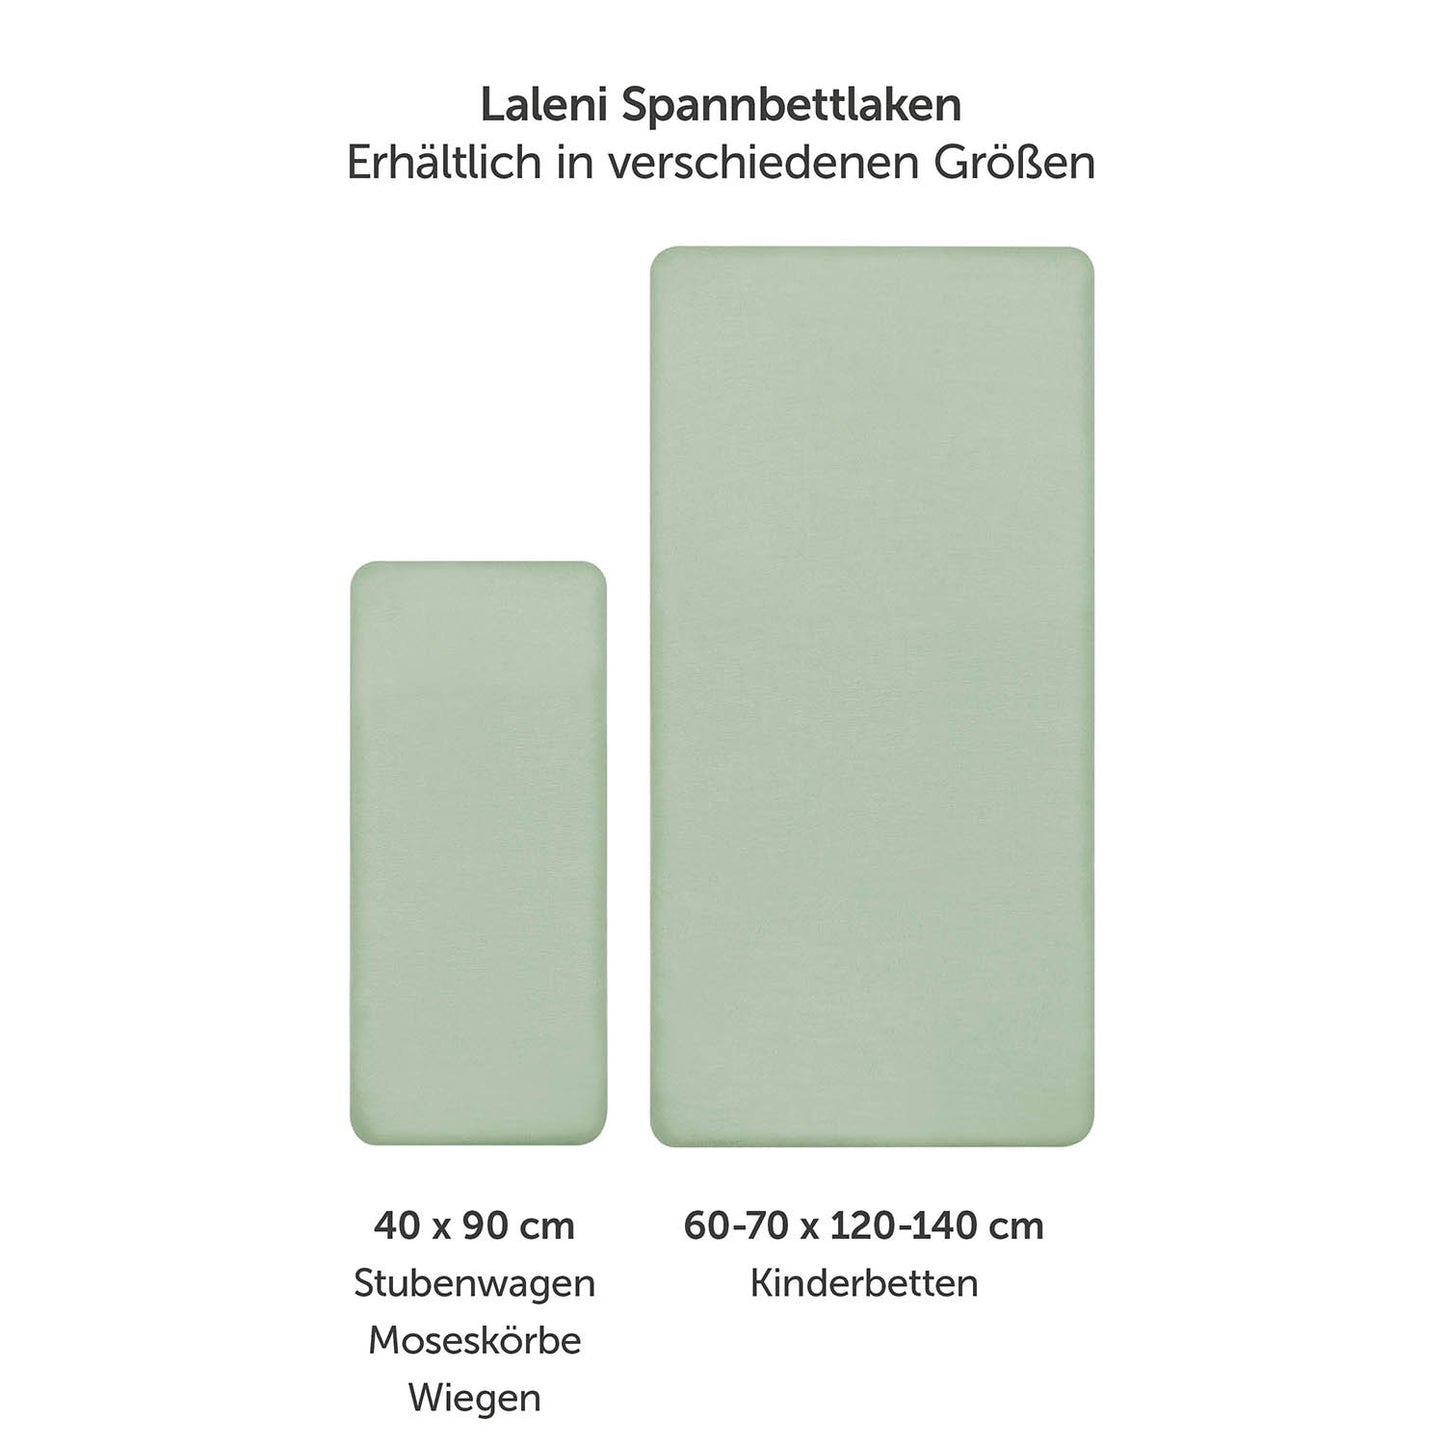 Produktverpackung für Premium Spannbetttücher in grün Farben mit Öko-Tex Standard 100 Siegel.